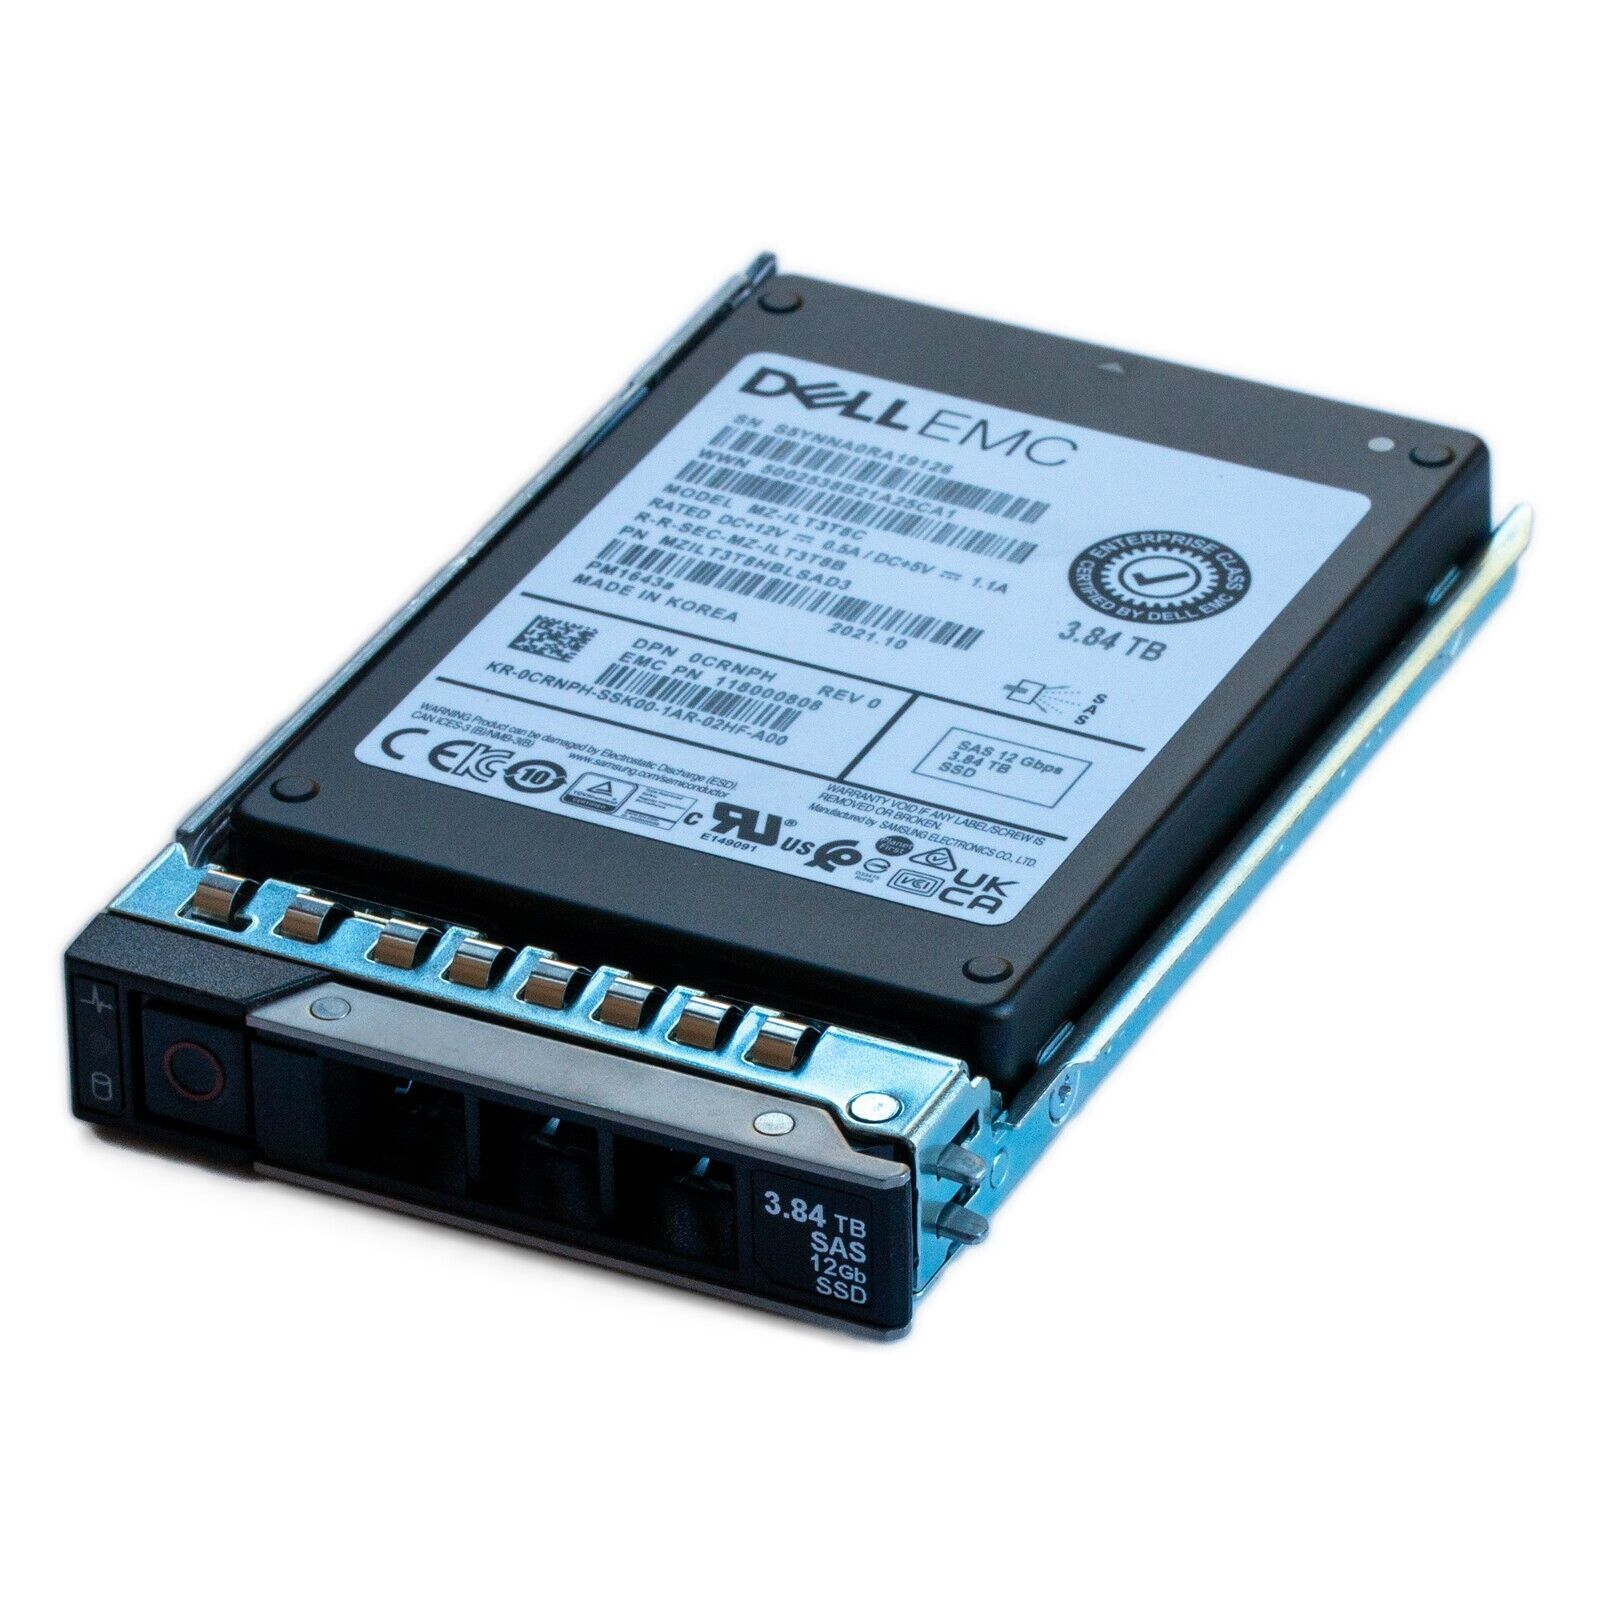 Samsung 990 PRO 1TB Internal SSD PCle Gen 4x4 NVMe MZ-V9P1T0B/AM - Best Buy